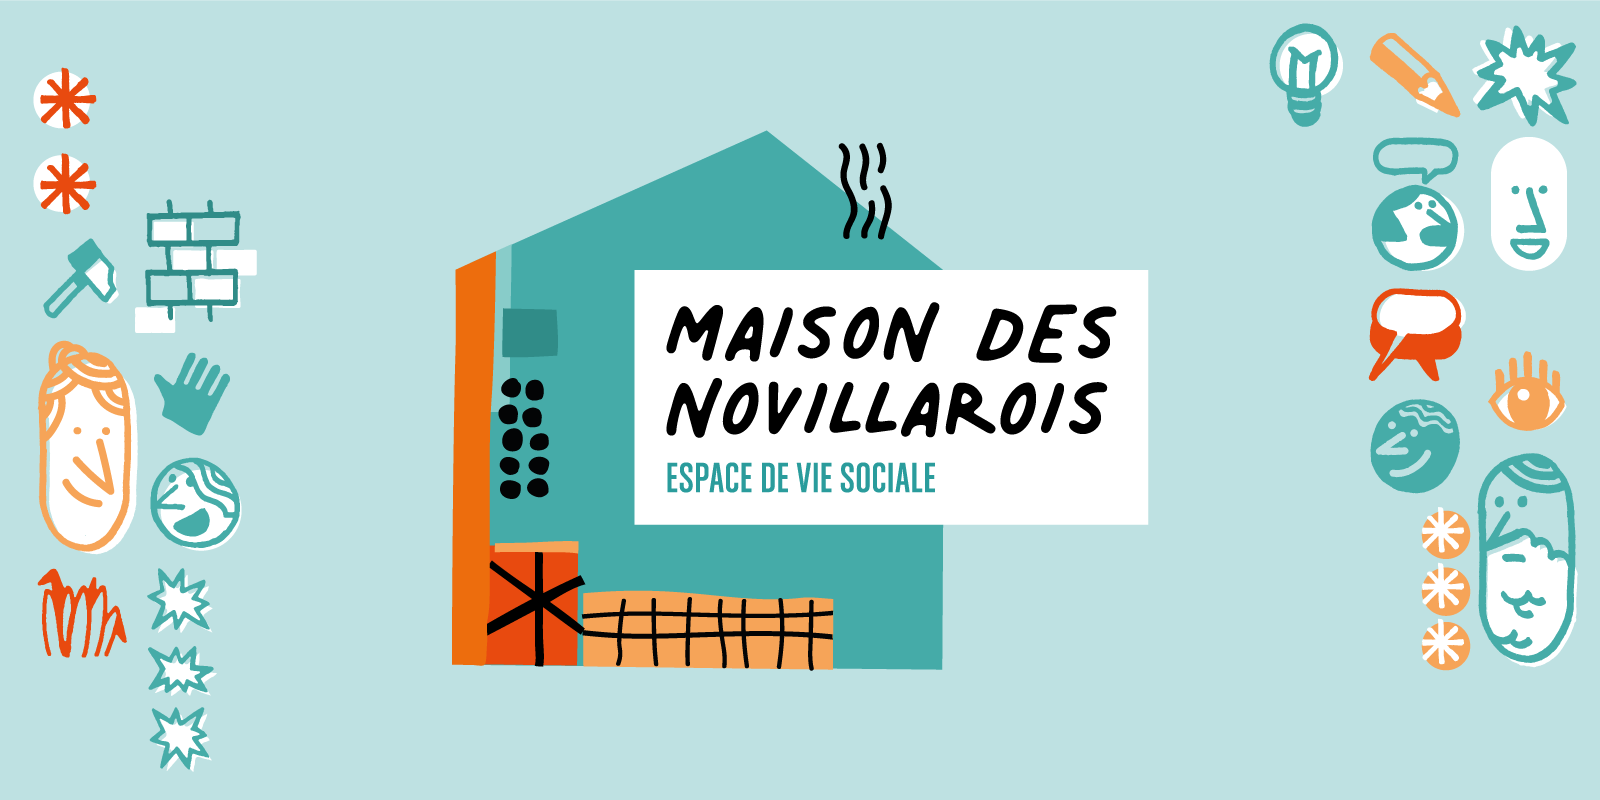 Maison-des-novillarois_panneau